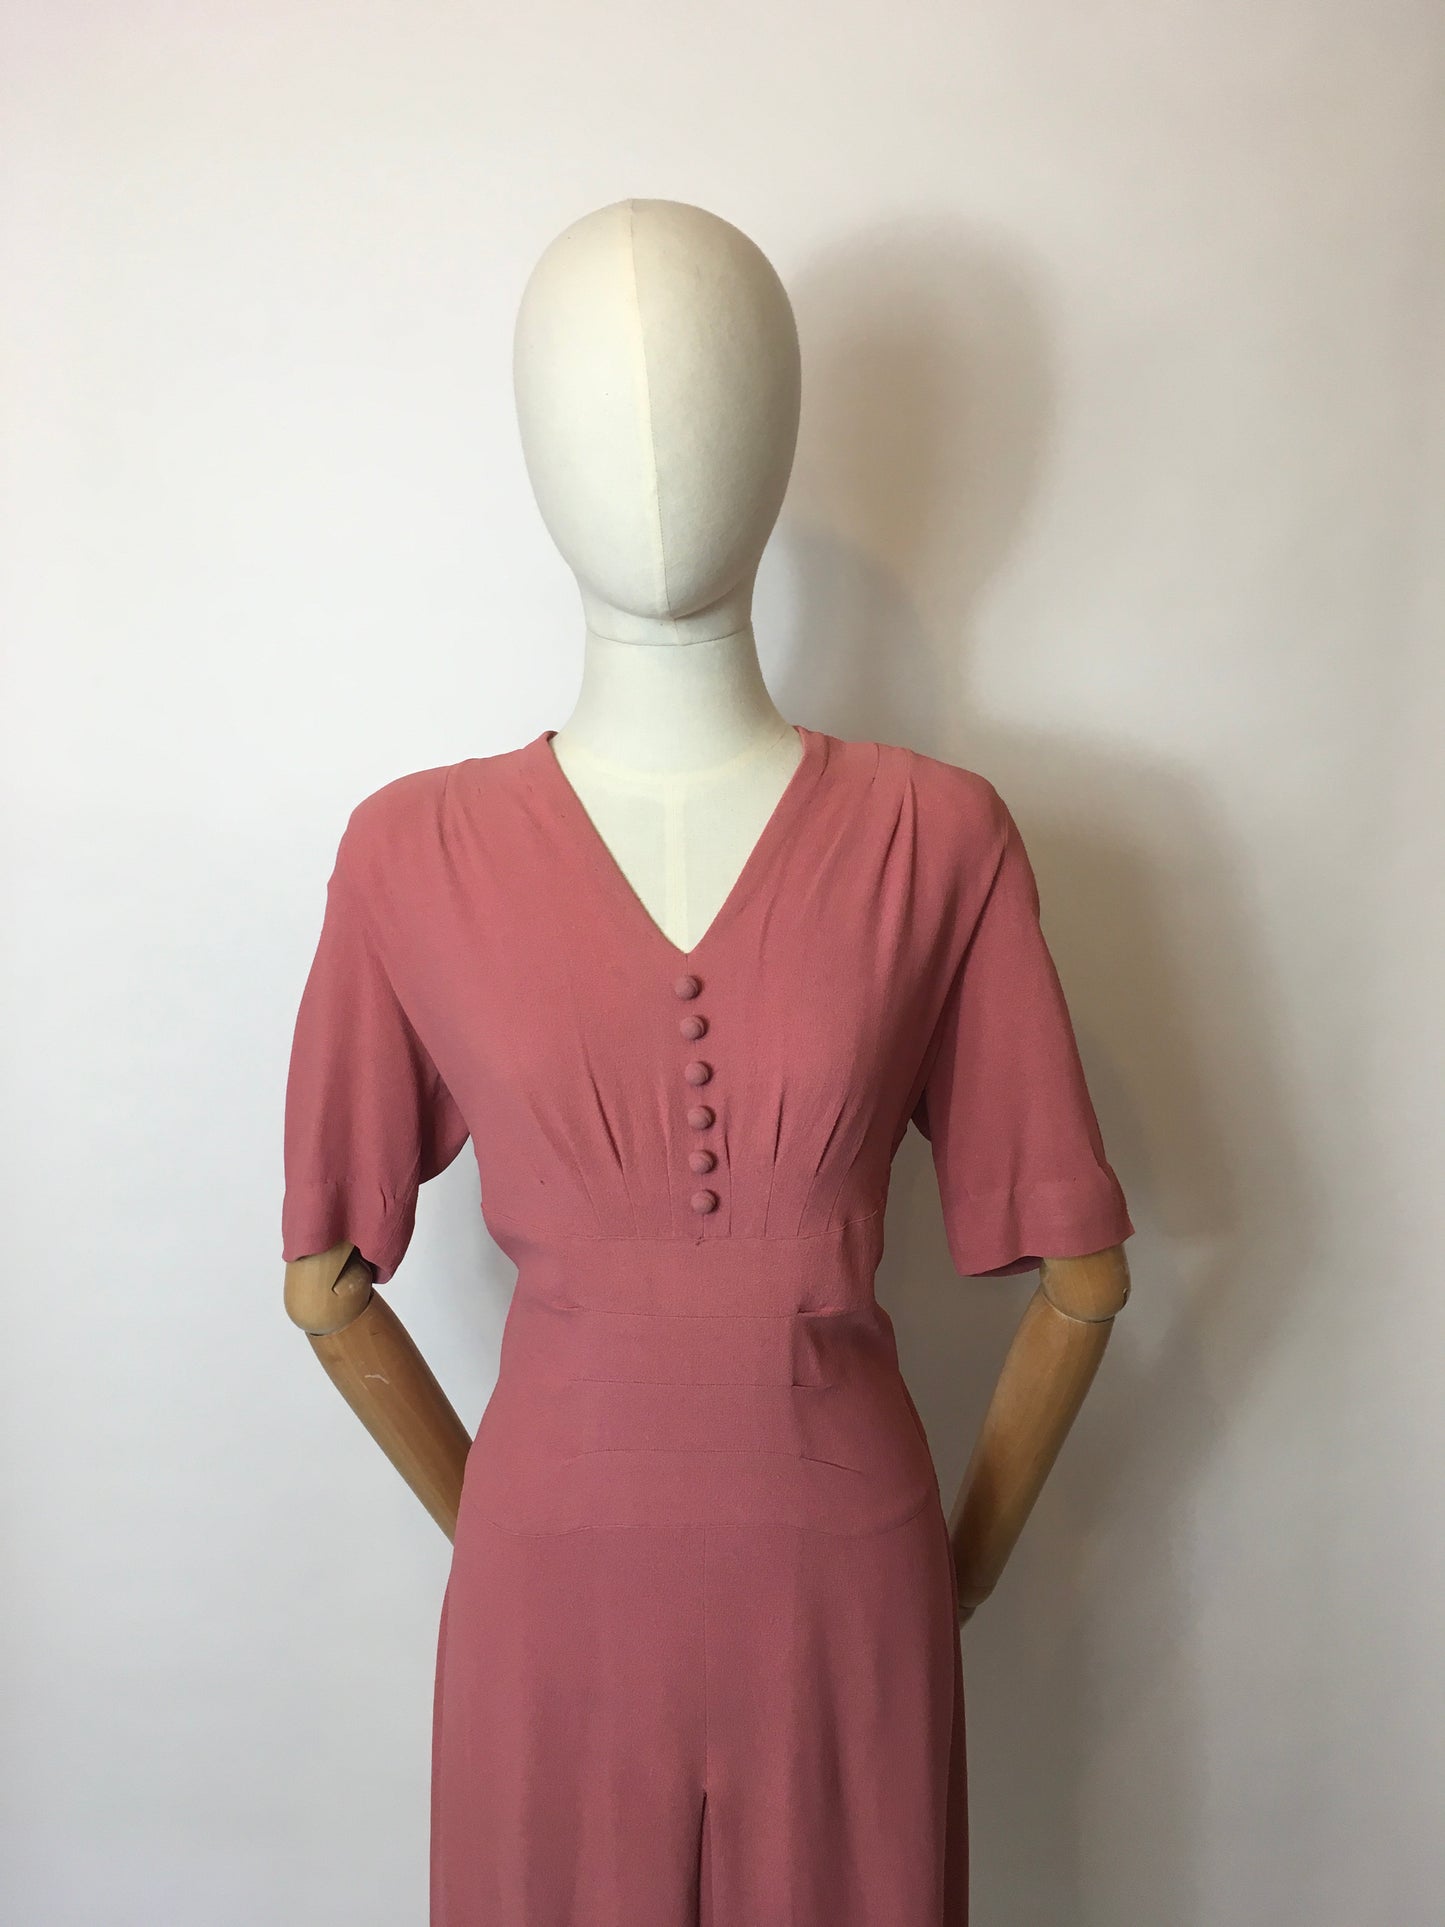 Original 1940’s Rose Pink Crepe Dress - Lovely Panelled Waist Detailing